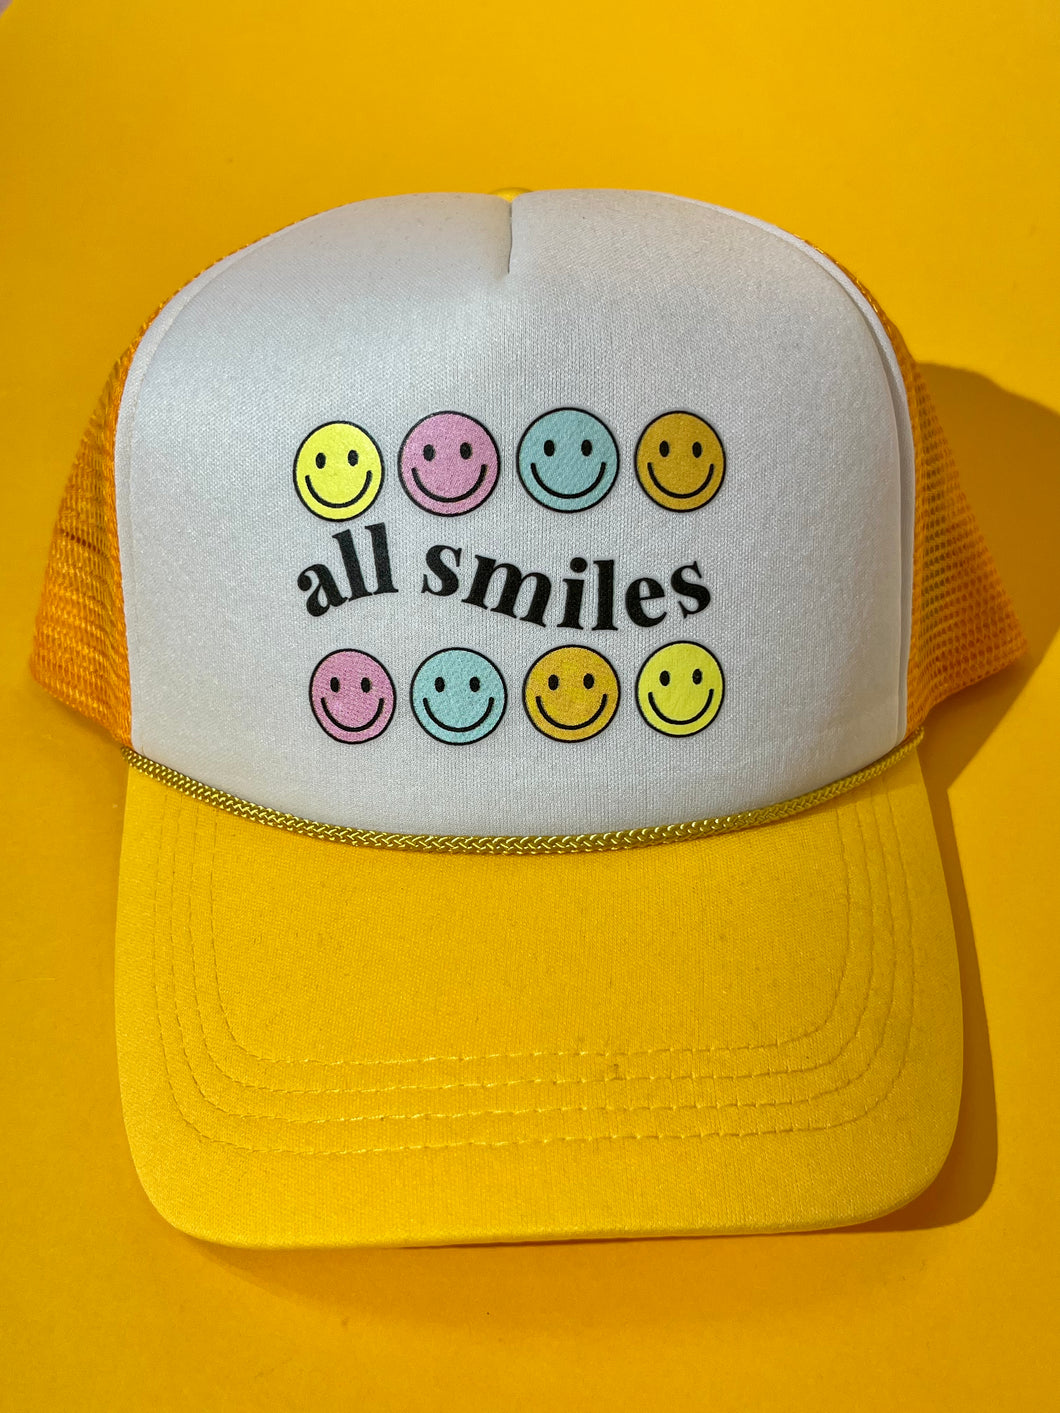 All smiles trucker hat